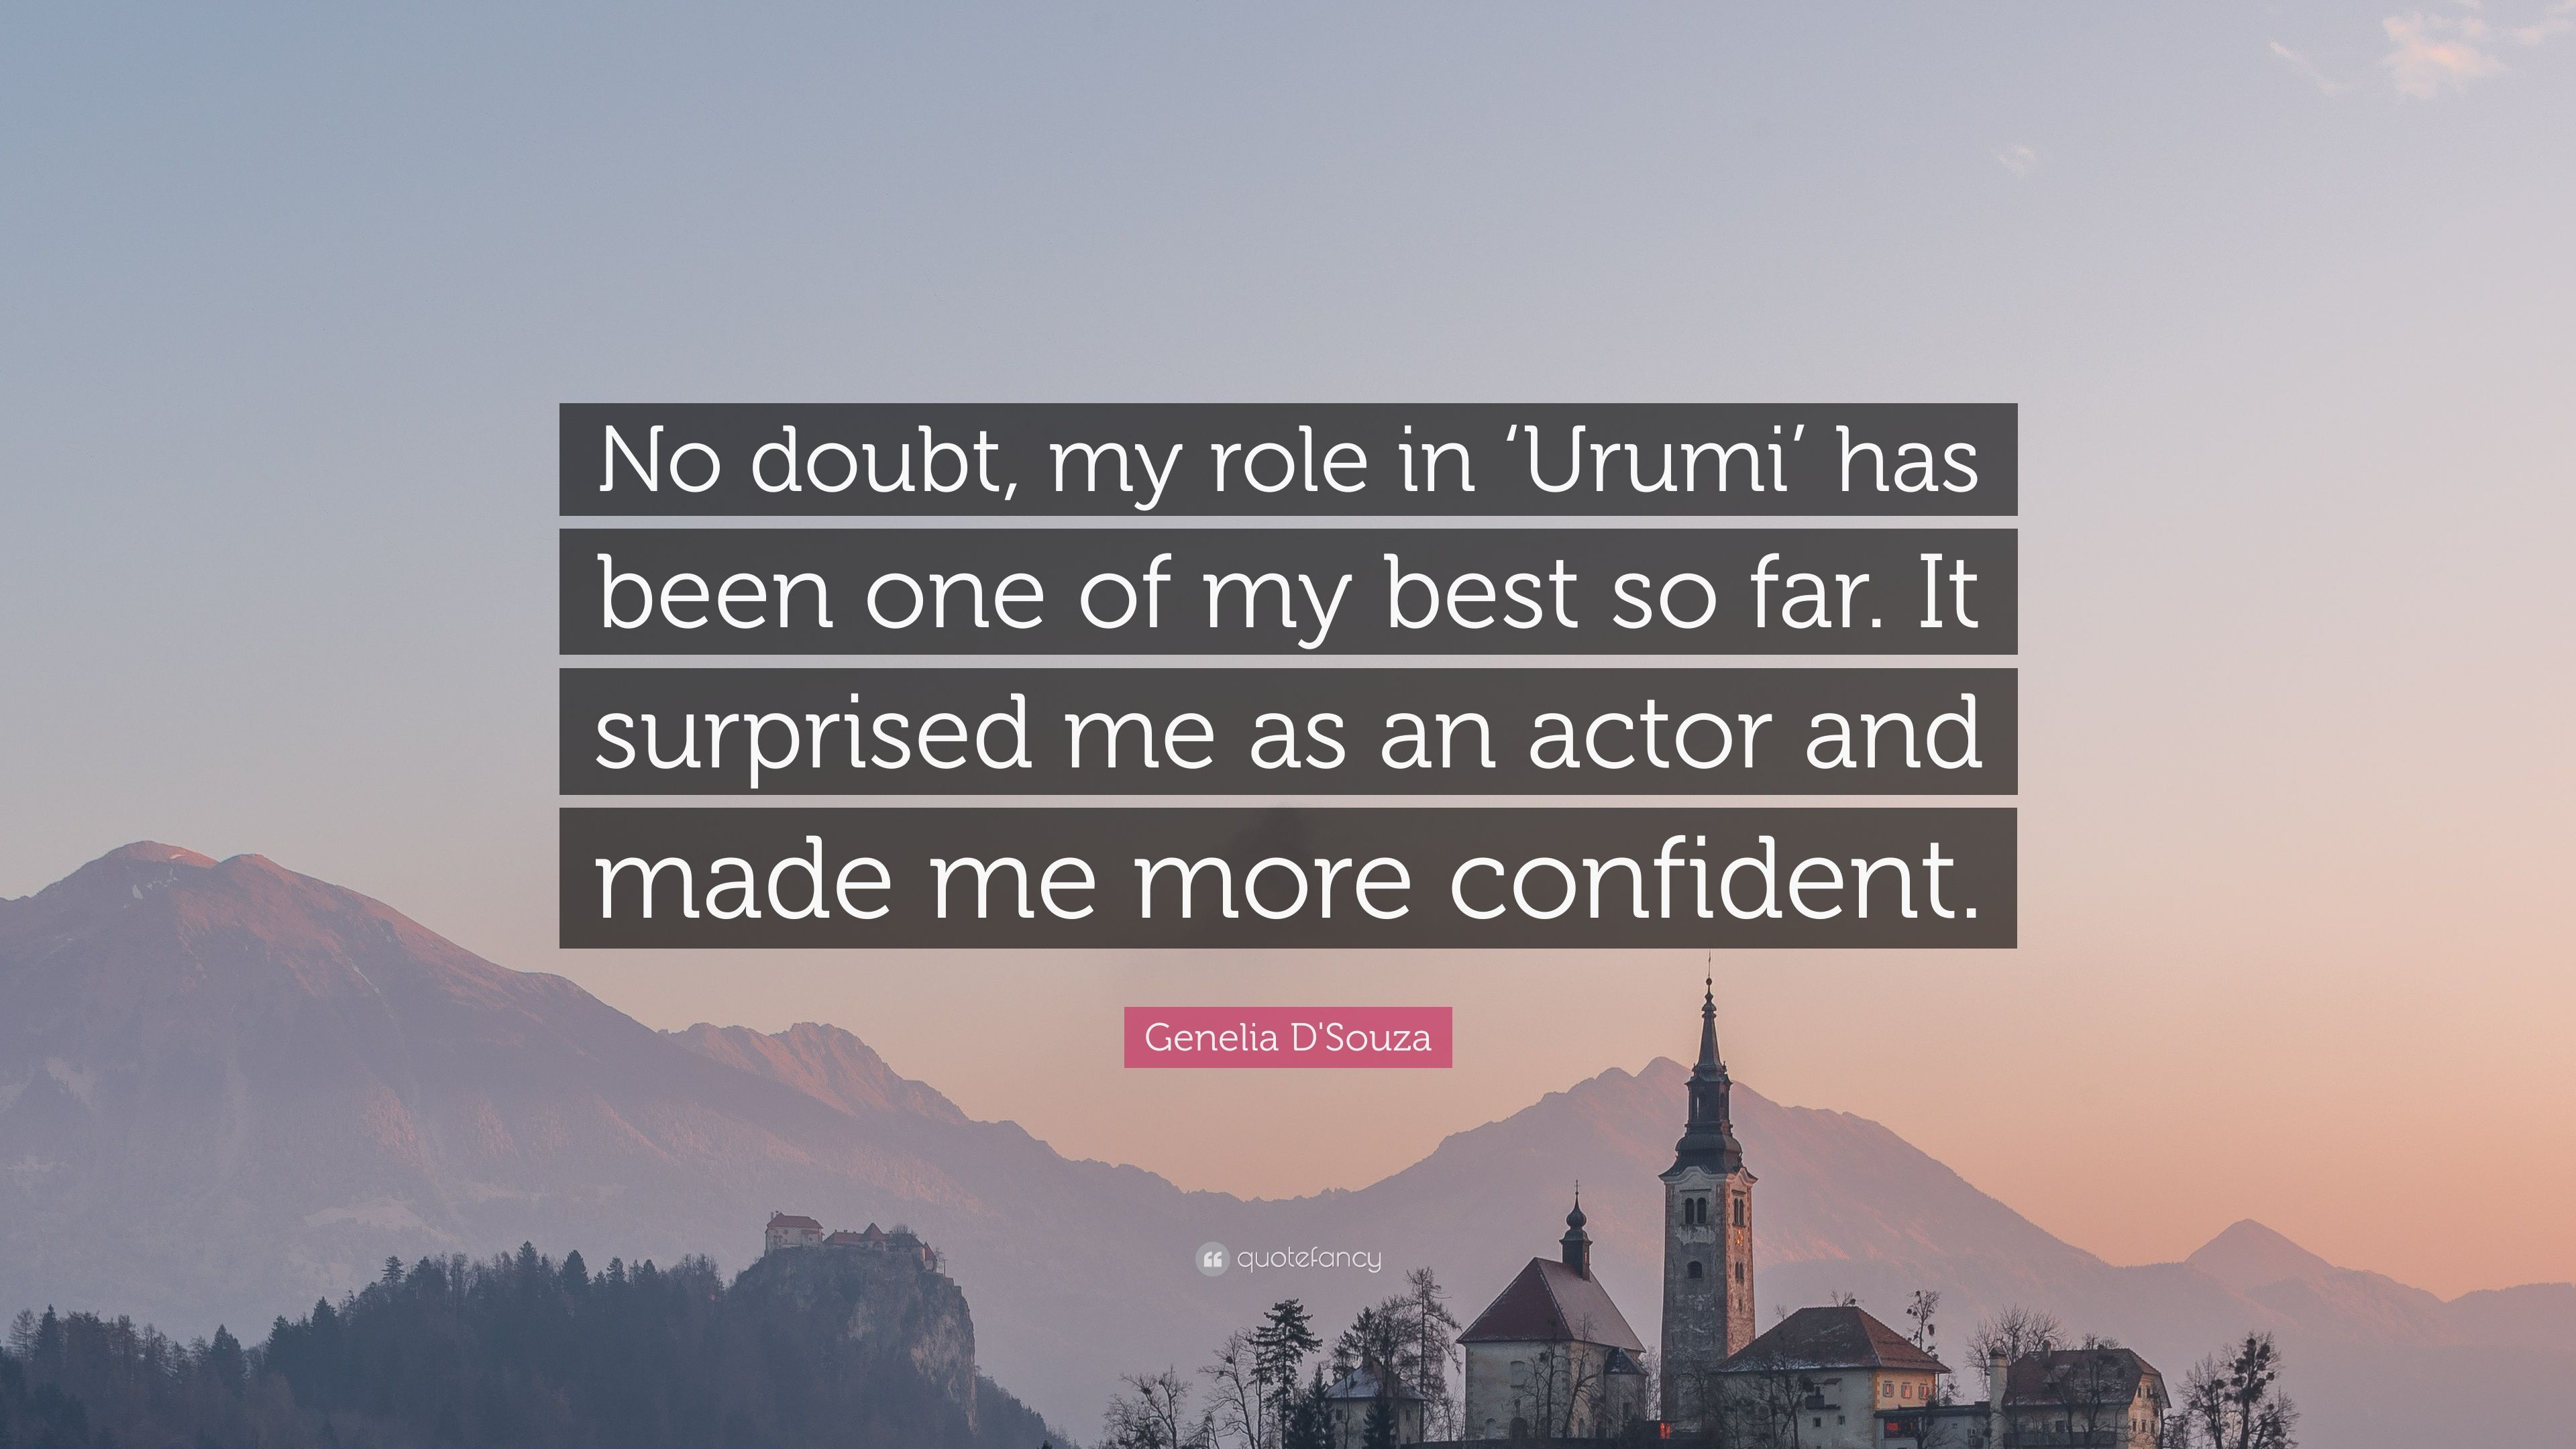 Genelia D'Souza Quote: “No doubt, my role in 'Urumi' has been one